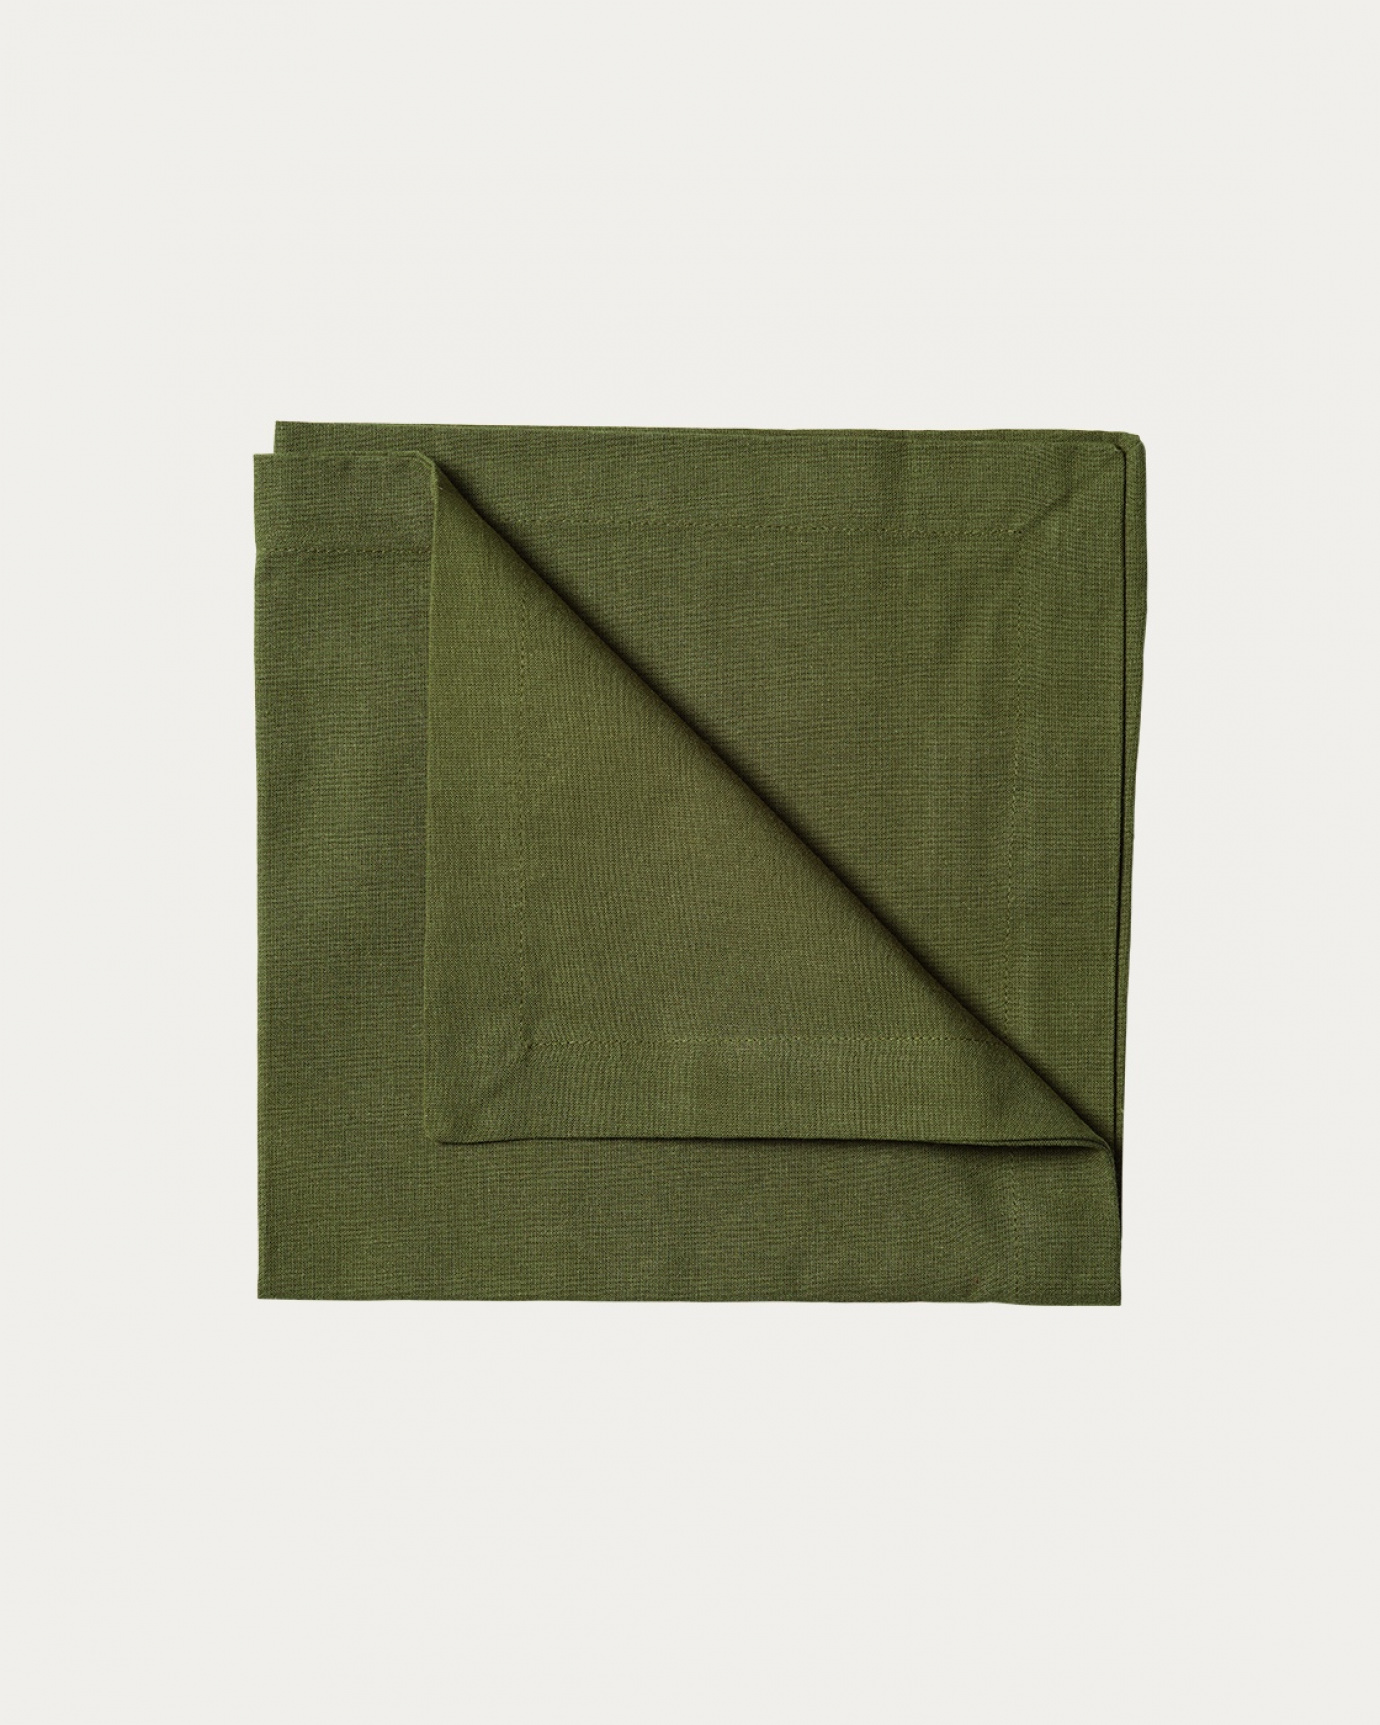 Produktbild dunkles olivgrün ROBERT Serviette aus weicher Baumwolle von LINUM DESIGN. Größe 45x45 cm und in 4er-Pack verkauft.